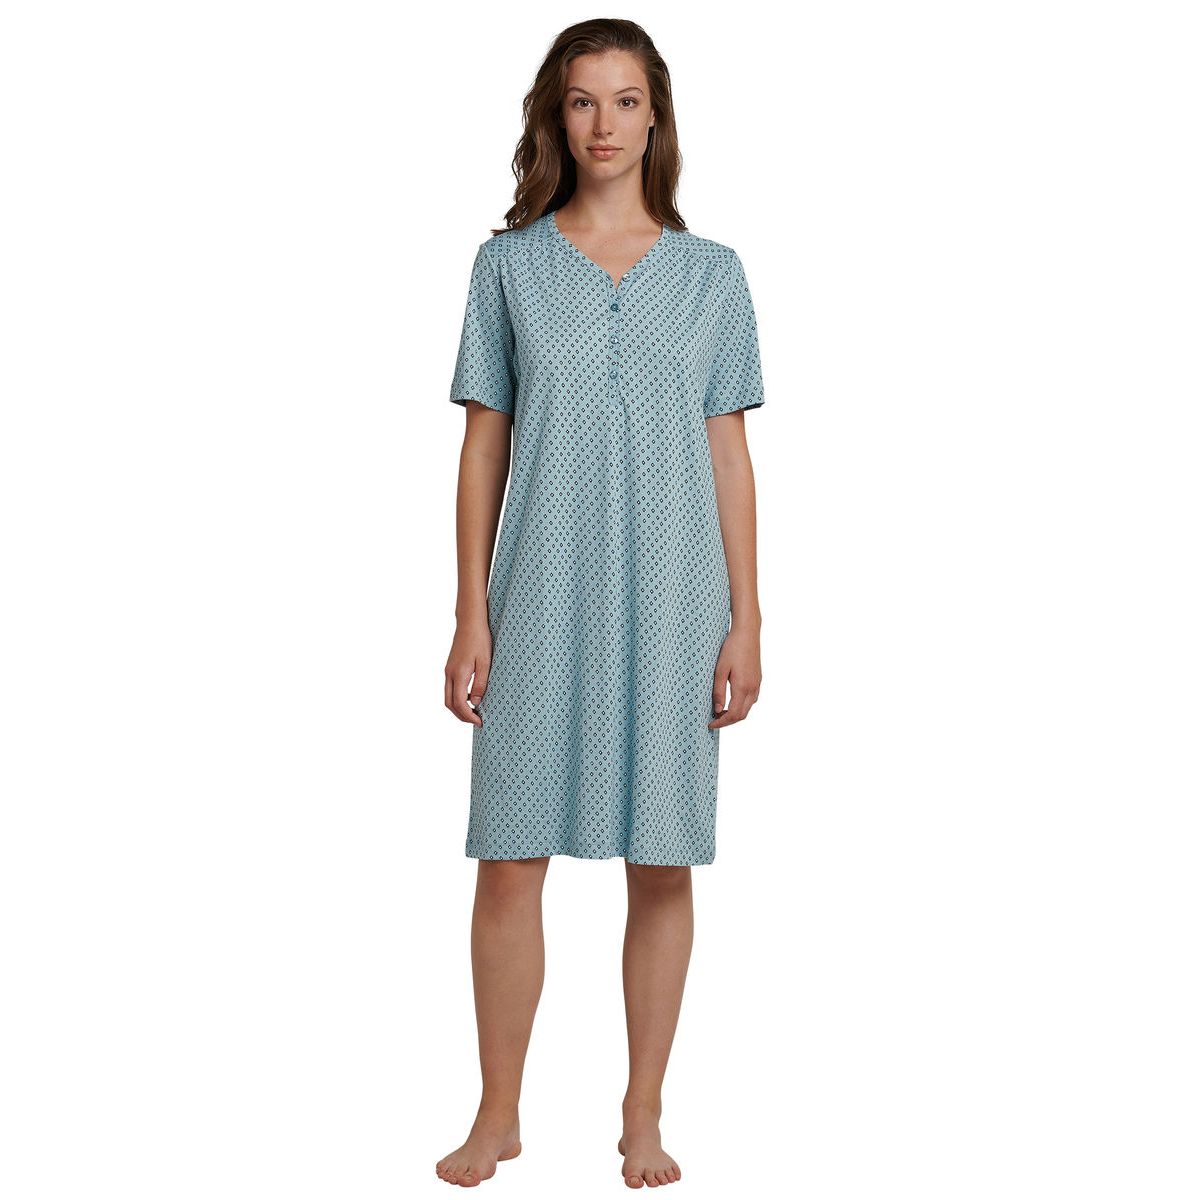 Schiesser dames nachthemd jadegroen | Bestel eenvoudig online | Gratis verzending | Snel huis | Online de mooiste pyjama's, nachthemden, ondermode en meer